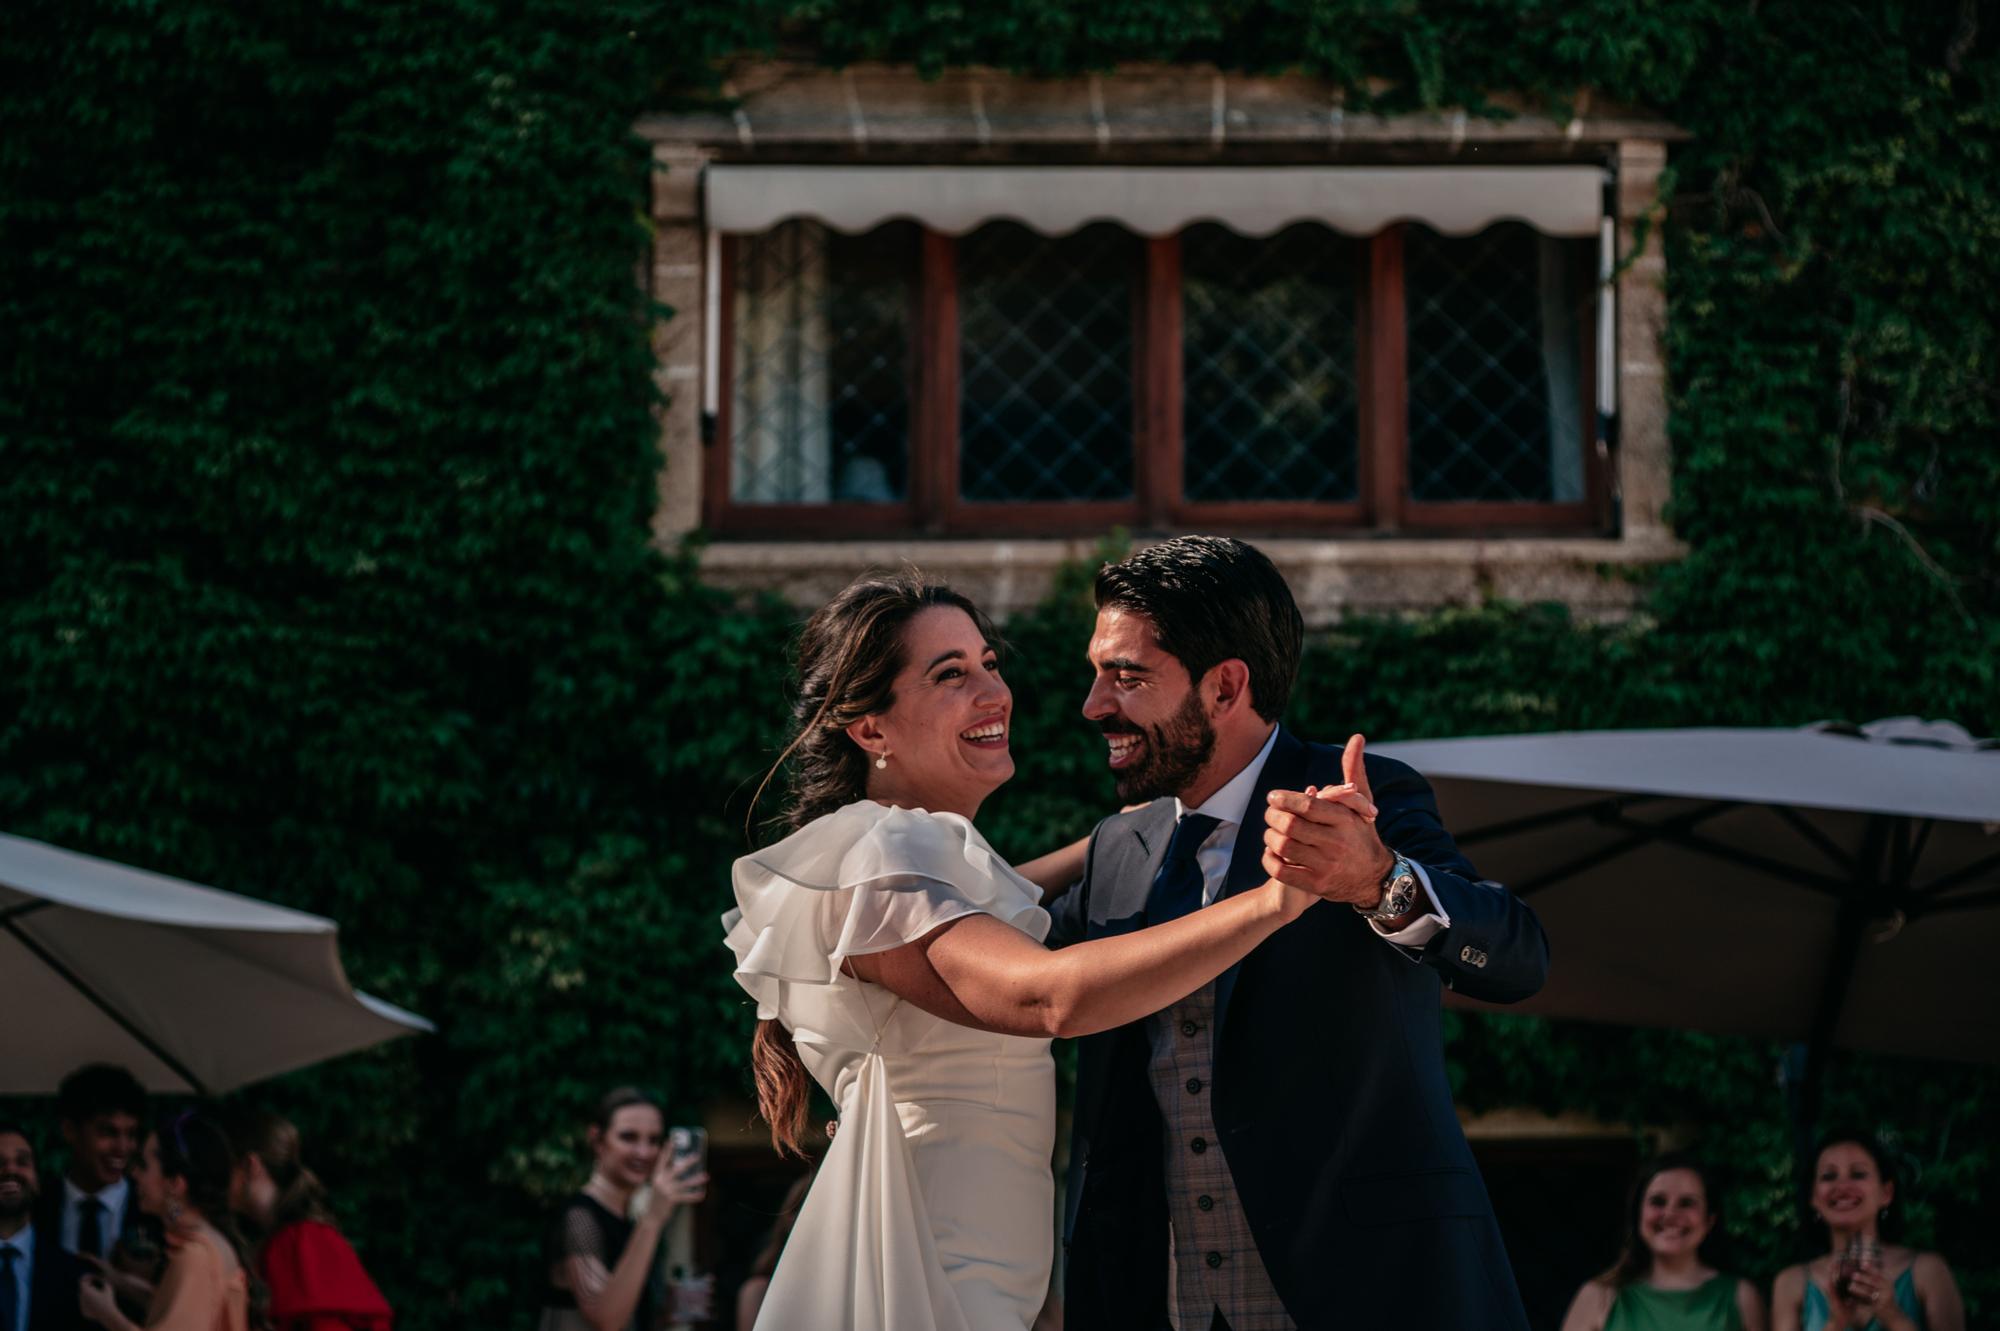 La corte de 2019 se estrena con la boda de Ana Ebri y Álvaro Navarro